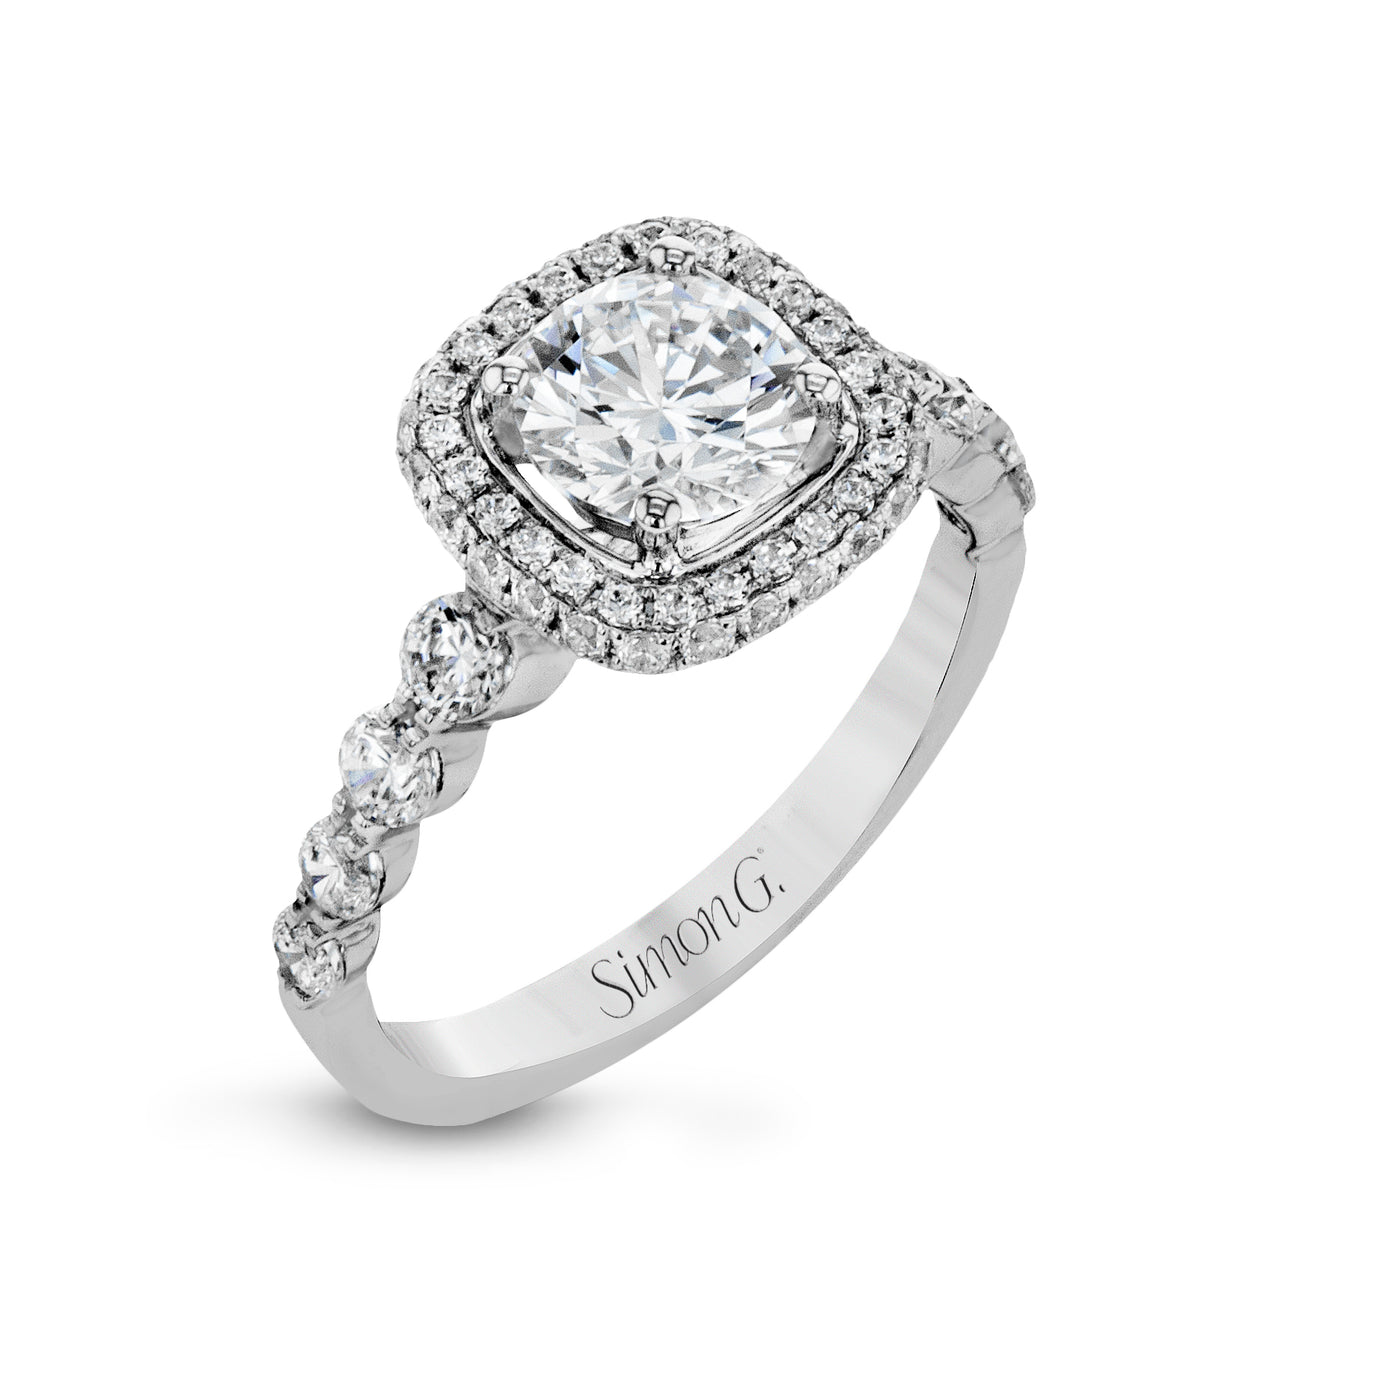 Simon G MR2743 Diamond Engagement Ring in White Gold